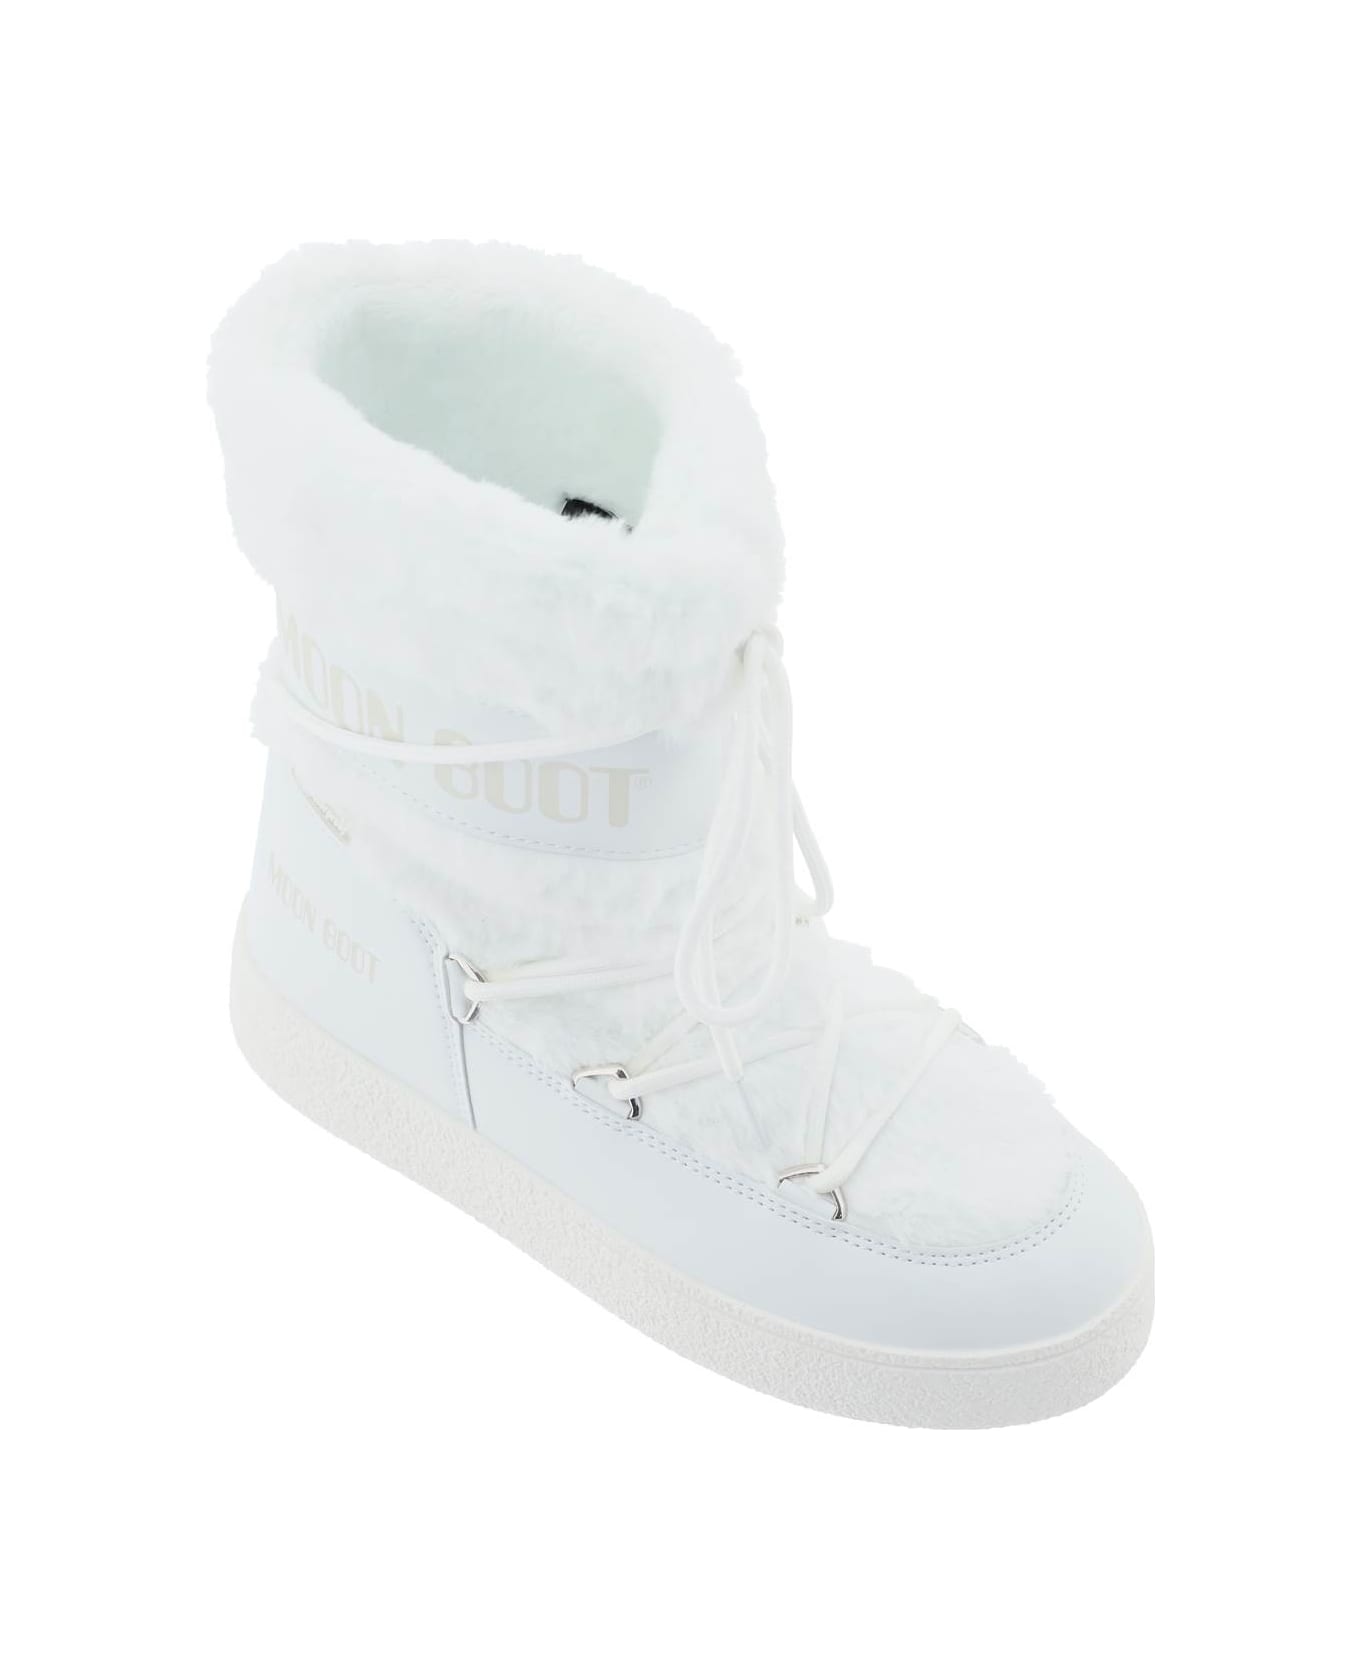 Moon Boot Ltrack Tube Apres-ski Boots - WHITE (White)